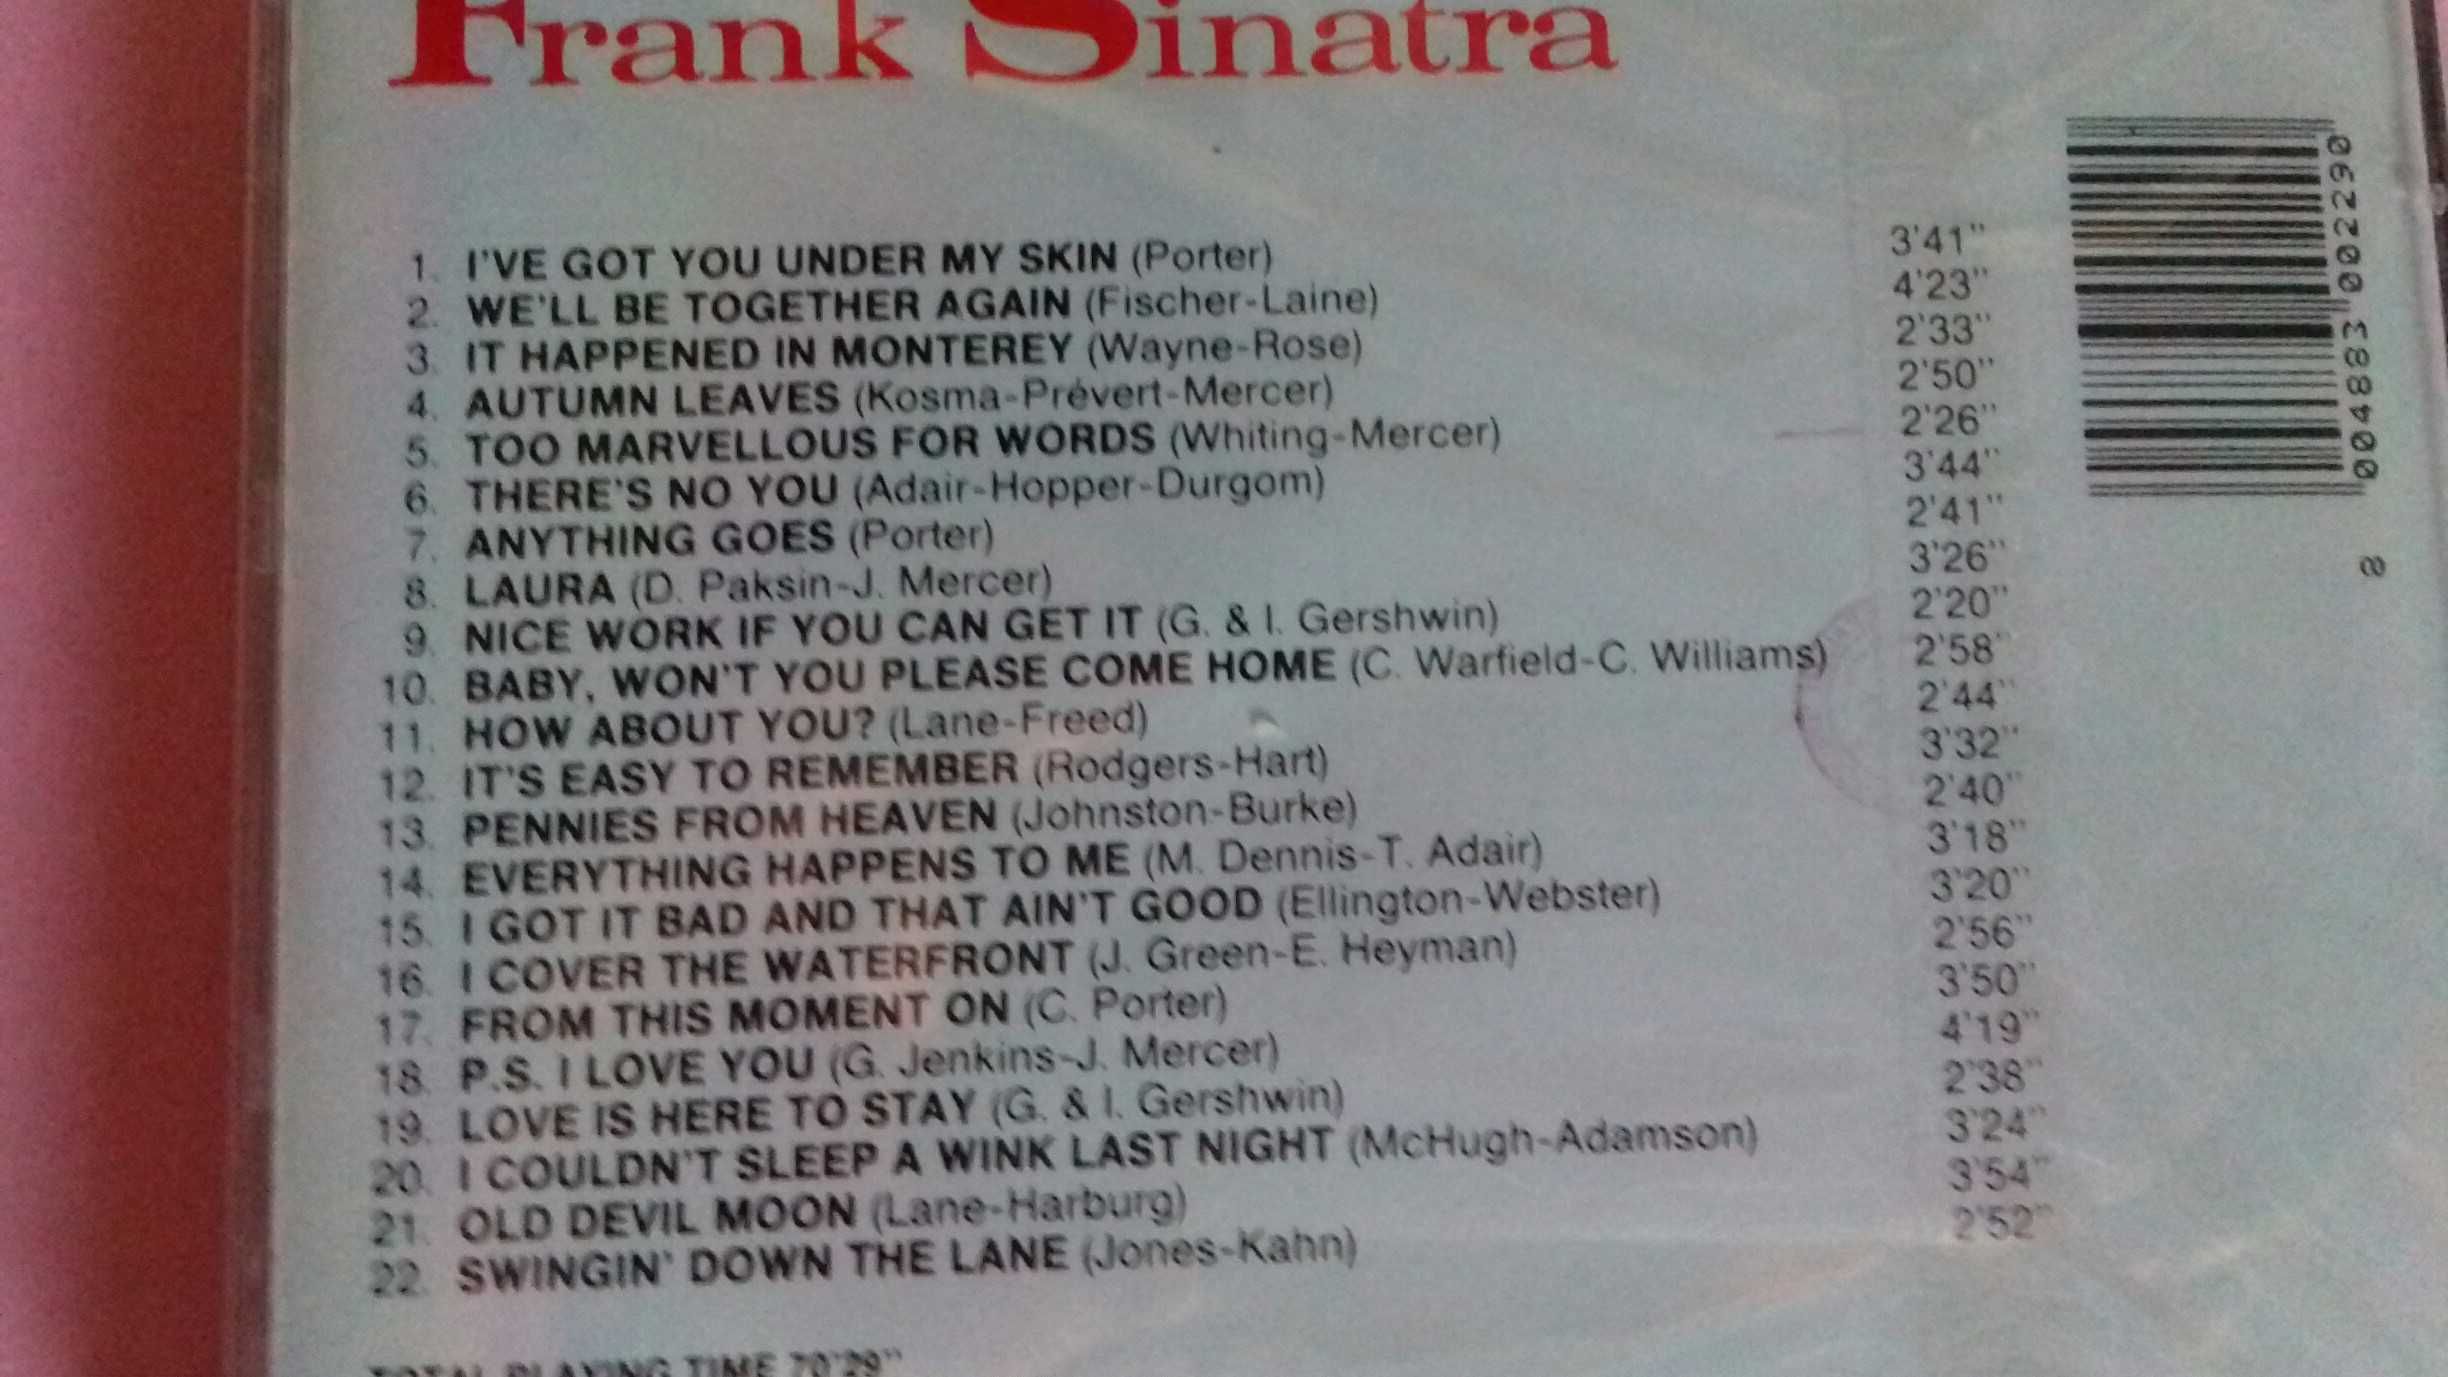 Frank Sinatra - 4 CD